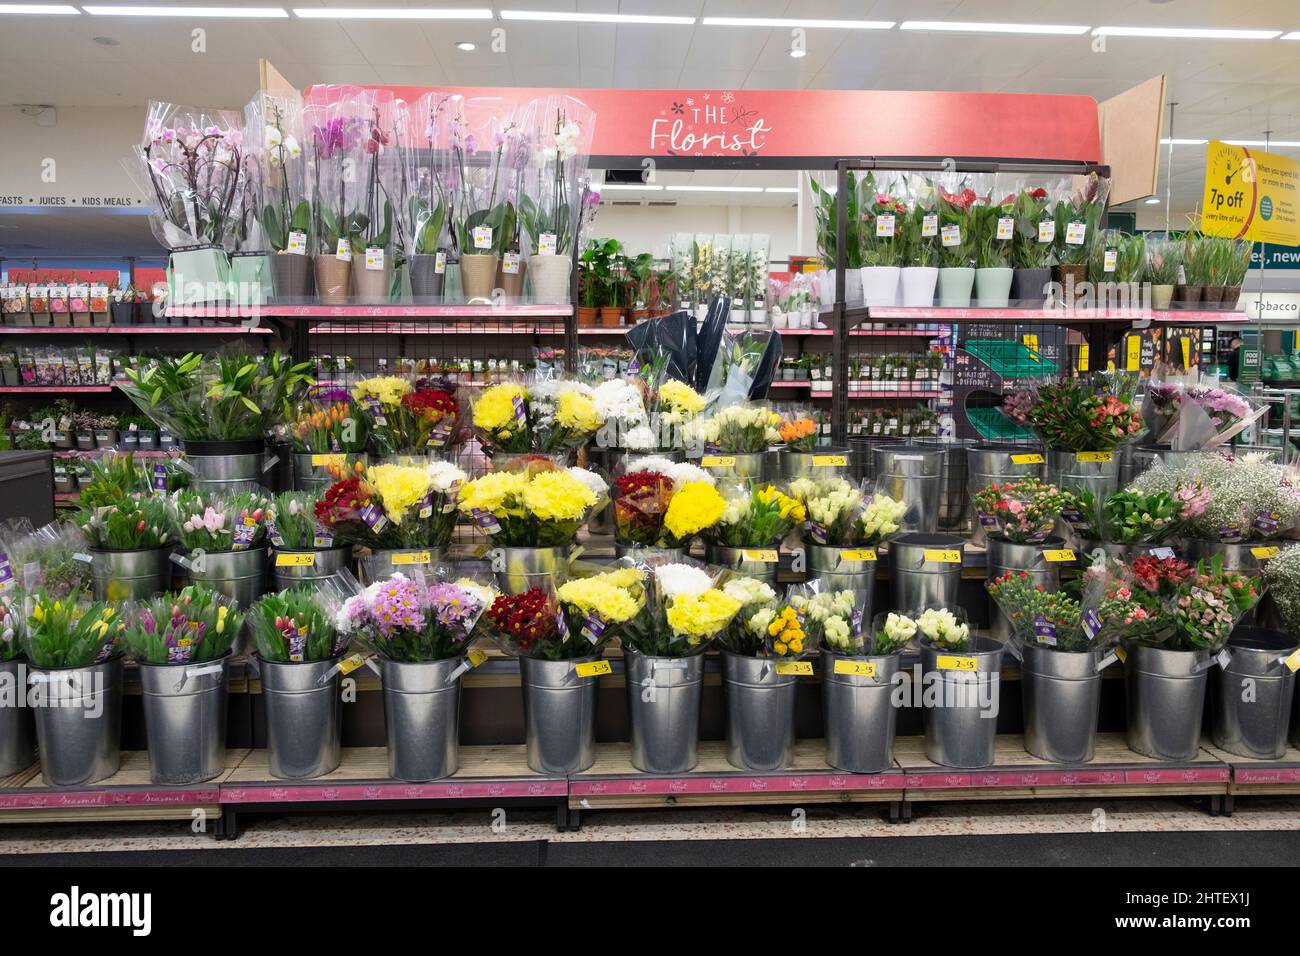 Floral Floristen zeigen Reihen von geschnittenen Blumen in britischen Kindergärten auf Regalen im Supermarkt Morrisons Februar 2022 Großbritannien Großbritannien KATHY DEWITT Stockfoto